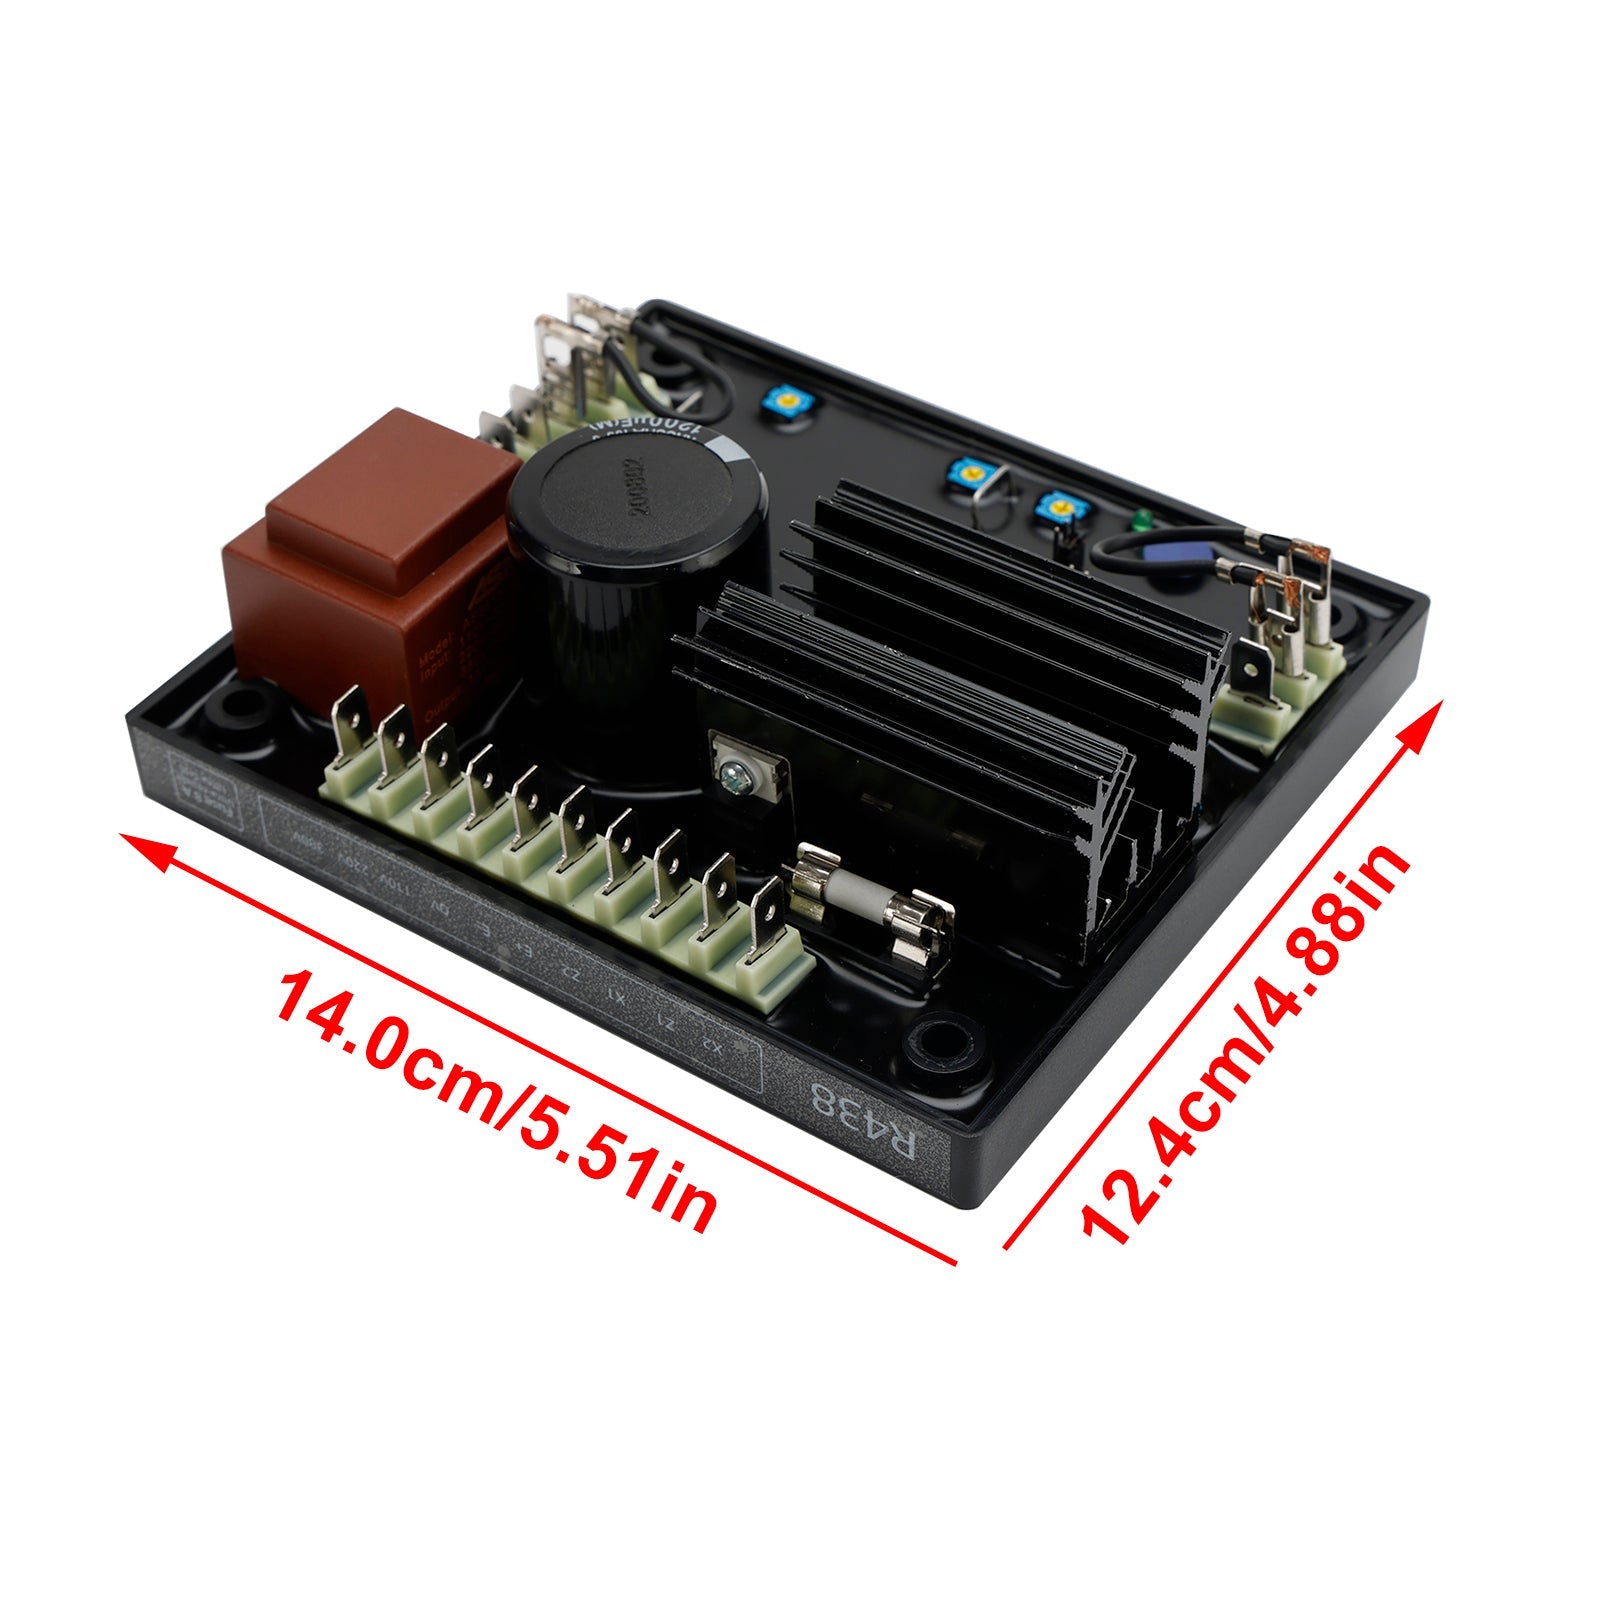 Régulateur de tension automatique AVR R438 compatible avec le générateur Leroy Somer